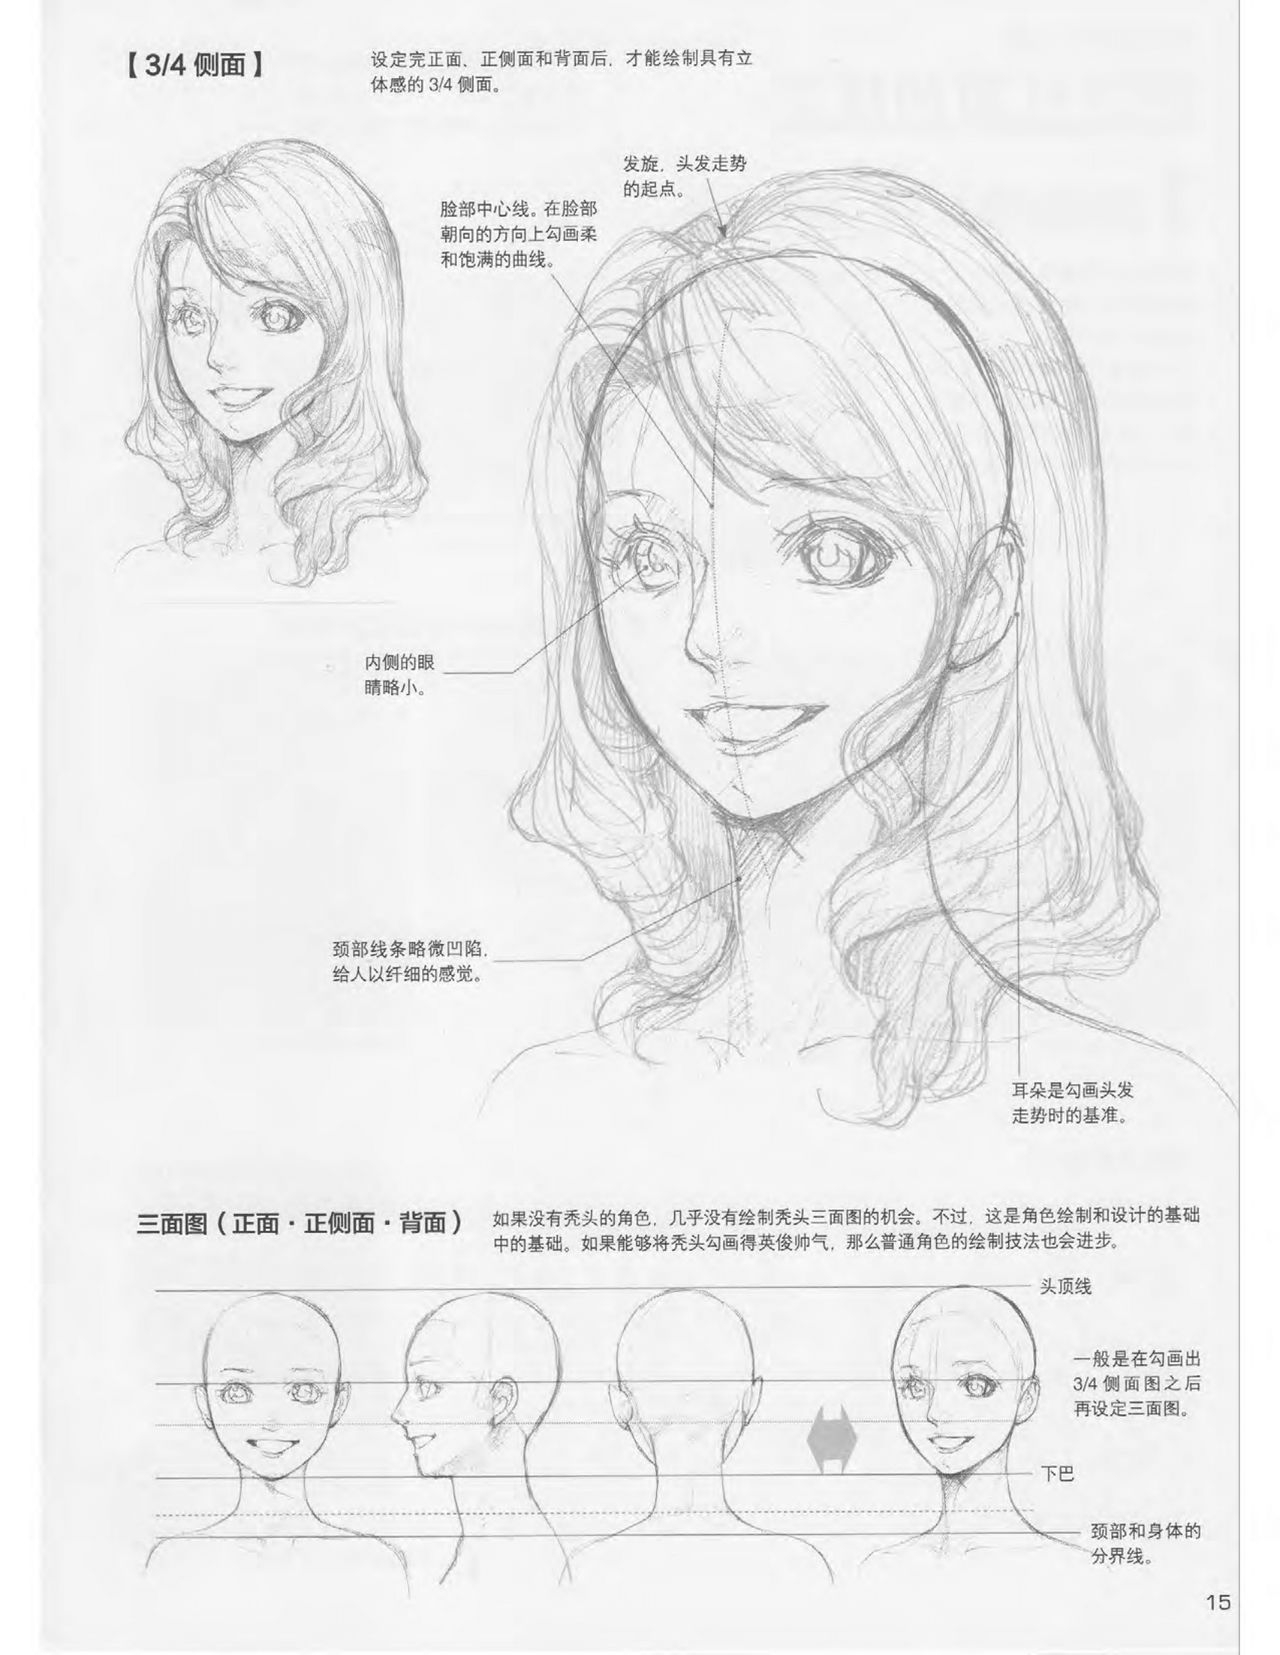 Japanese Manga Master Lecture 3: Lin Akira and Kakumaru Maru Talk About Glamorous Character Modeling 15